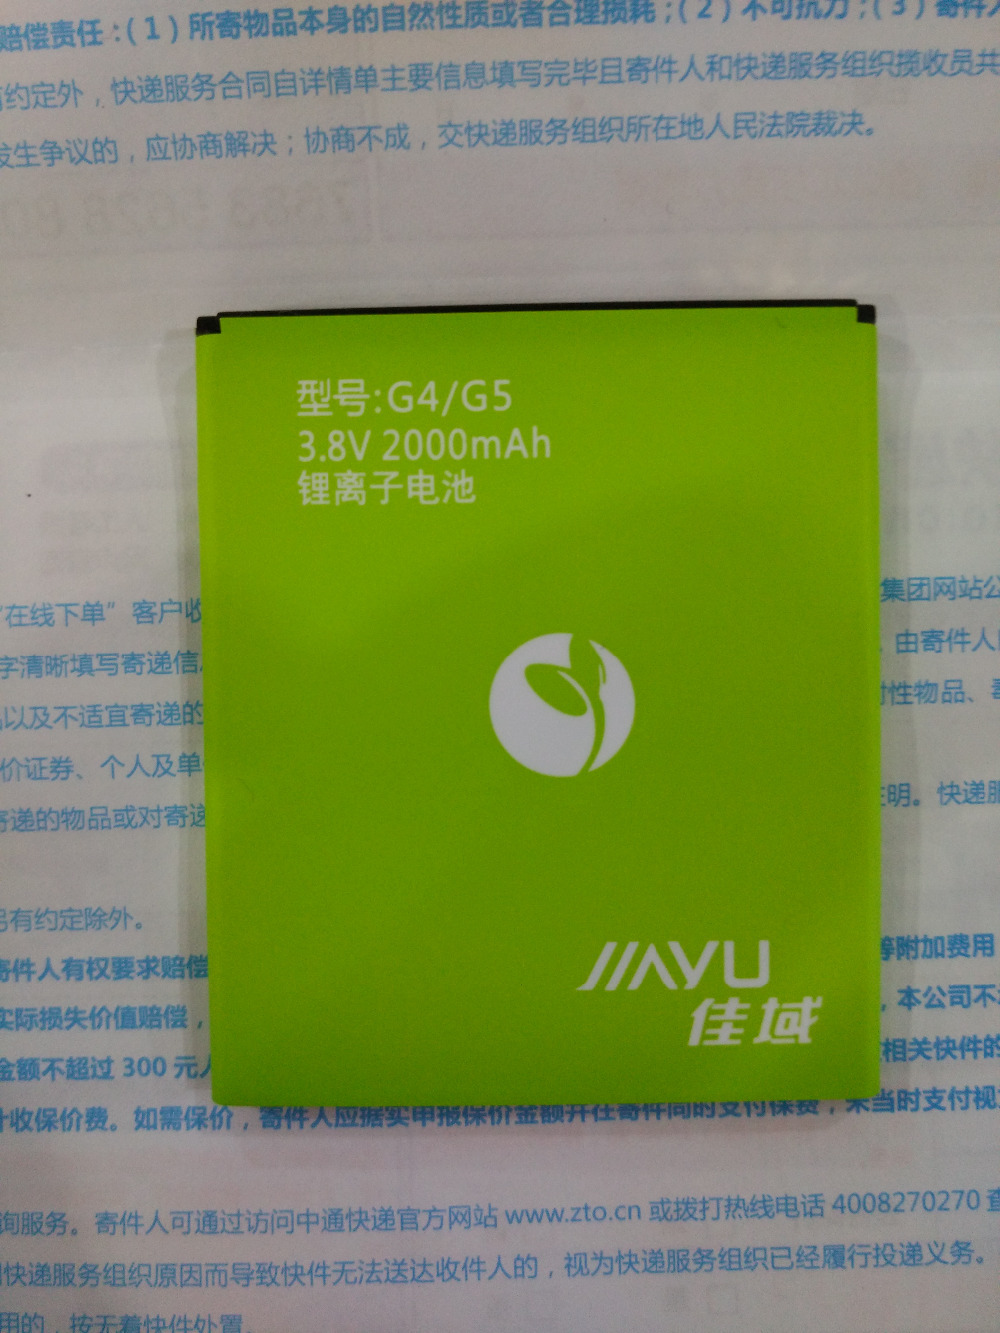  jiayu g5  2000    jiayu g5s   ,  jiayu g5s jy-g5    batterij bateria